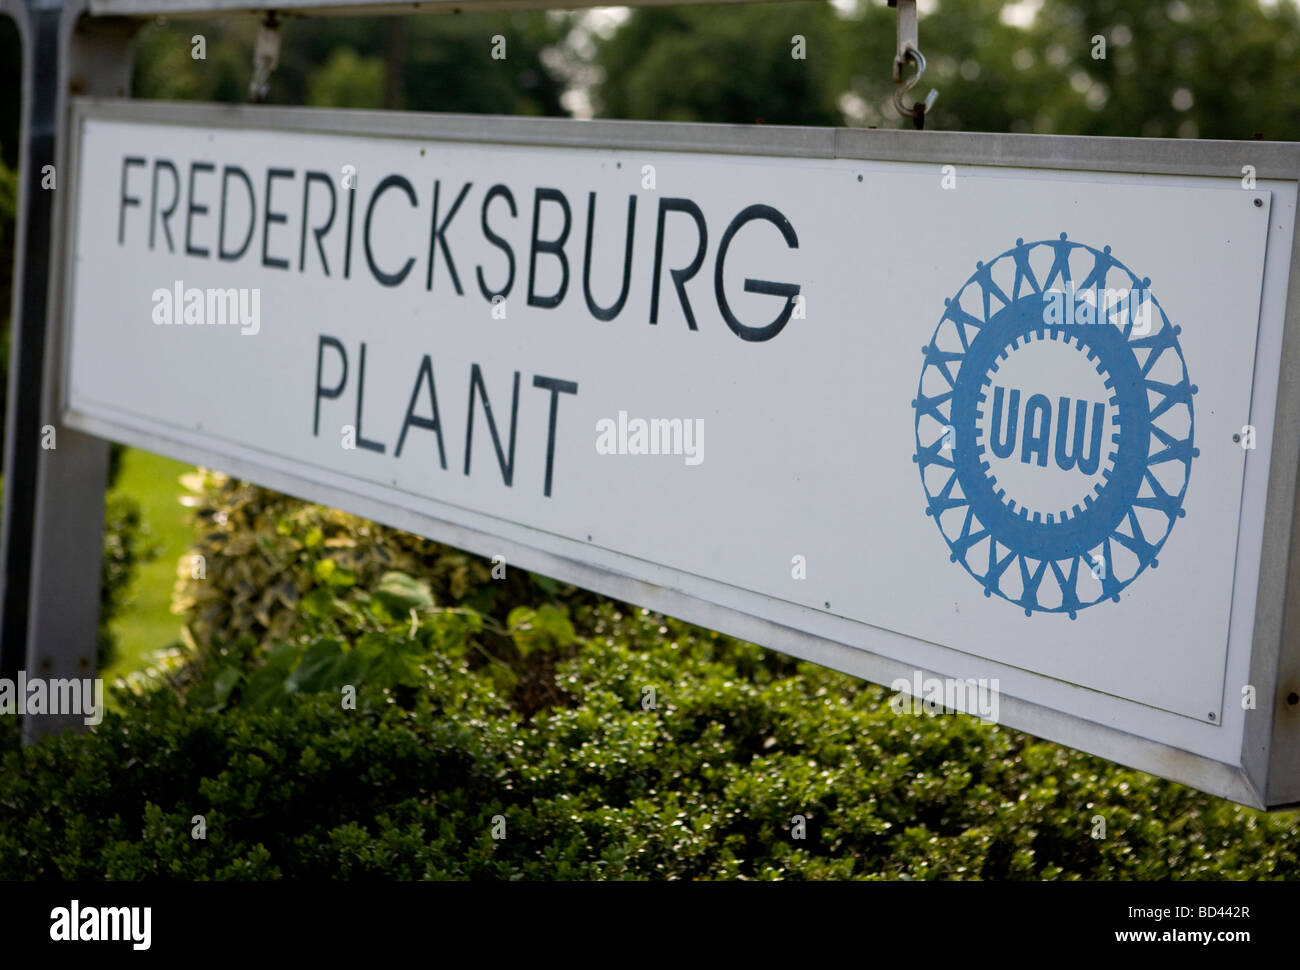 Fredericksburg Powertrain è uno dei nove piante GM in tutto il paese che ora fallita General Motors prevede di chiudere. Foto Stock